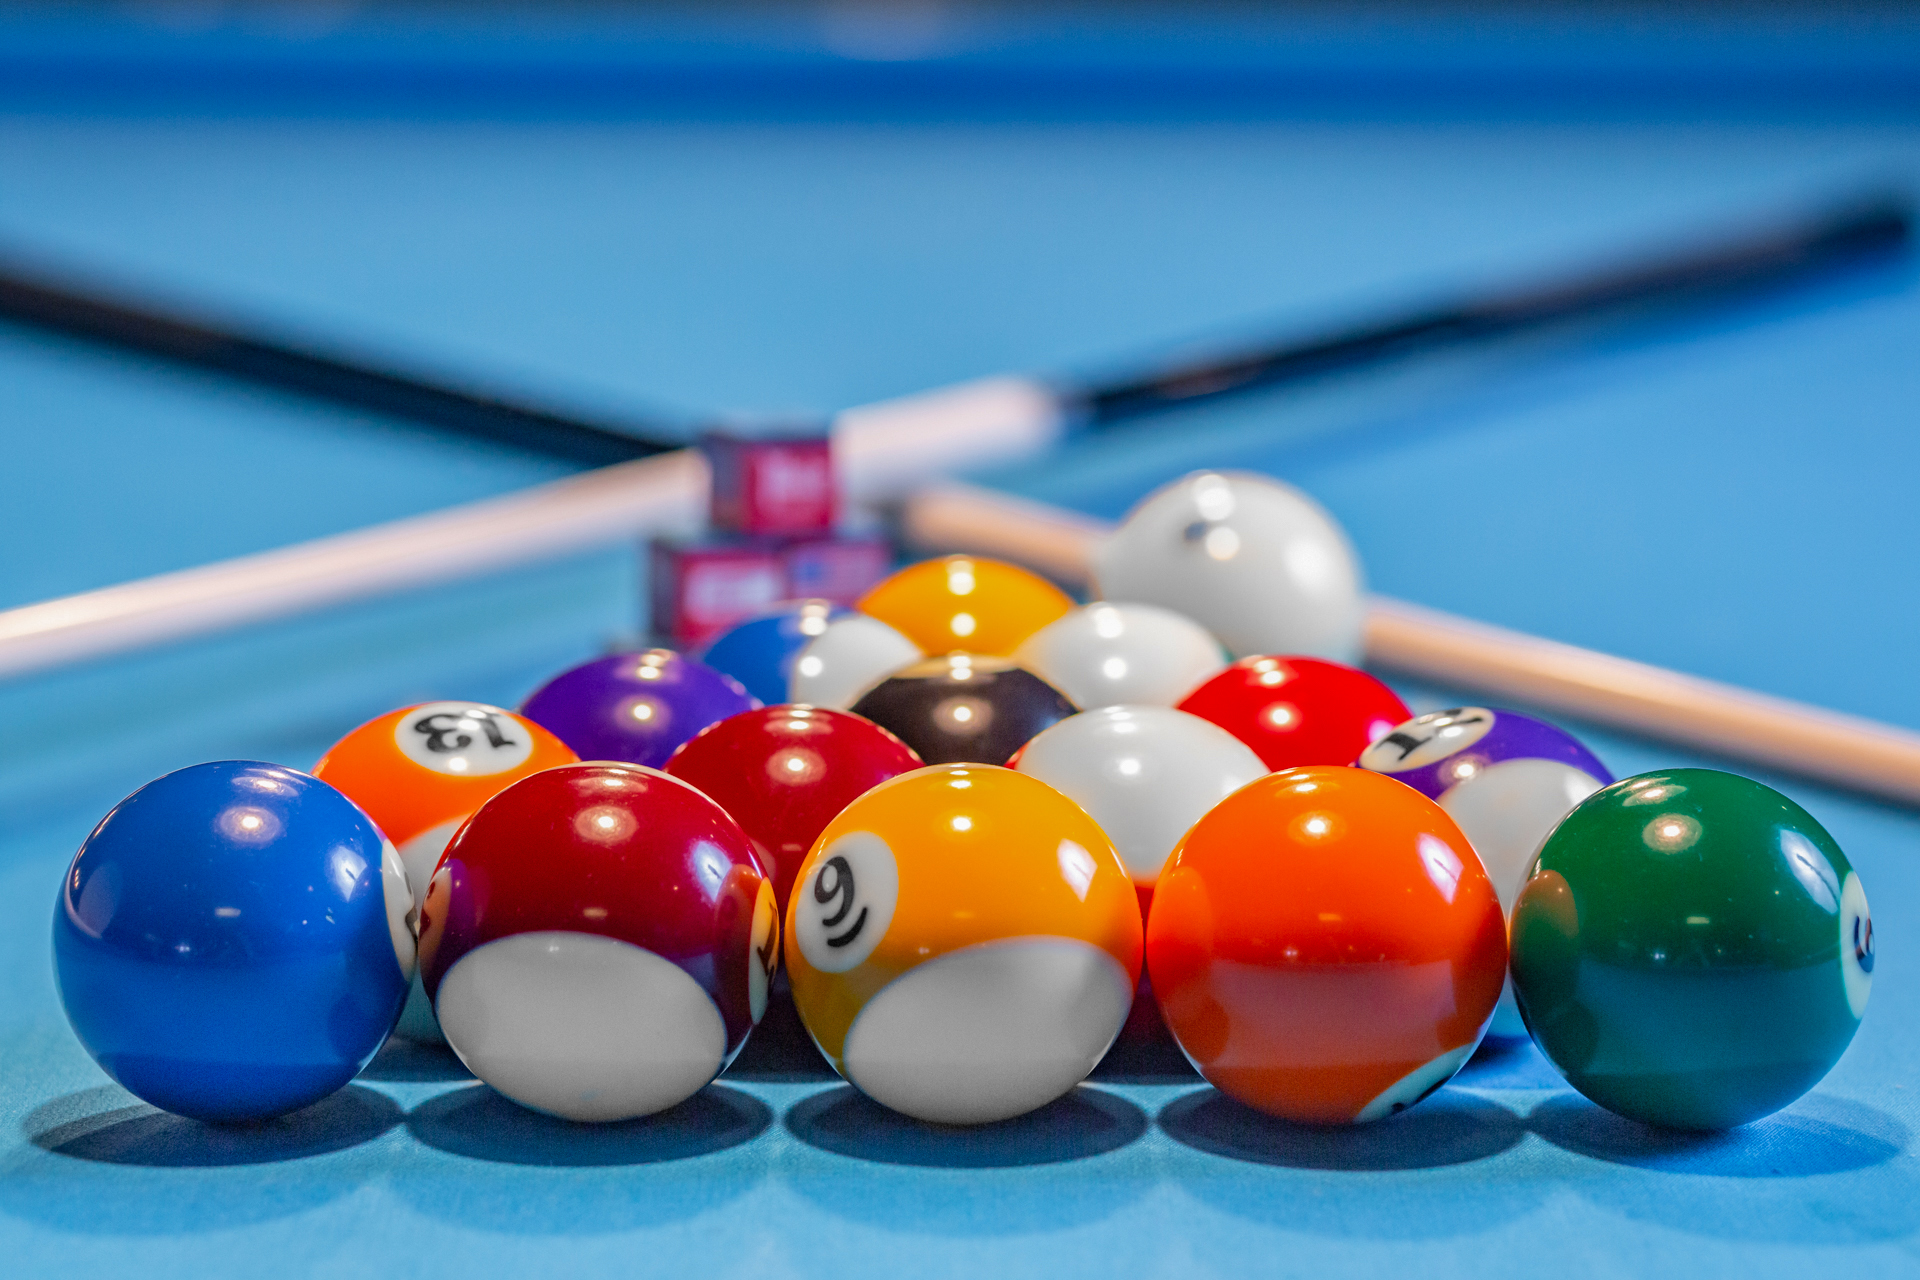 Tucson Menu - CLICKS Billiards - Billiards, Games, Sports, Bar and Grill